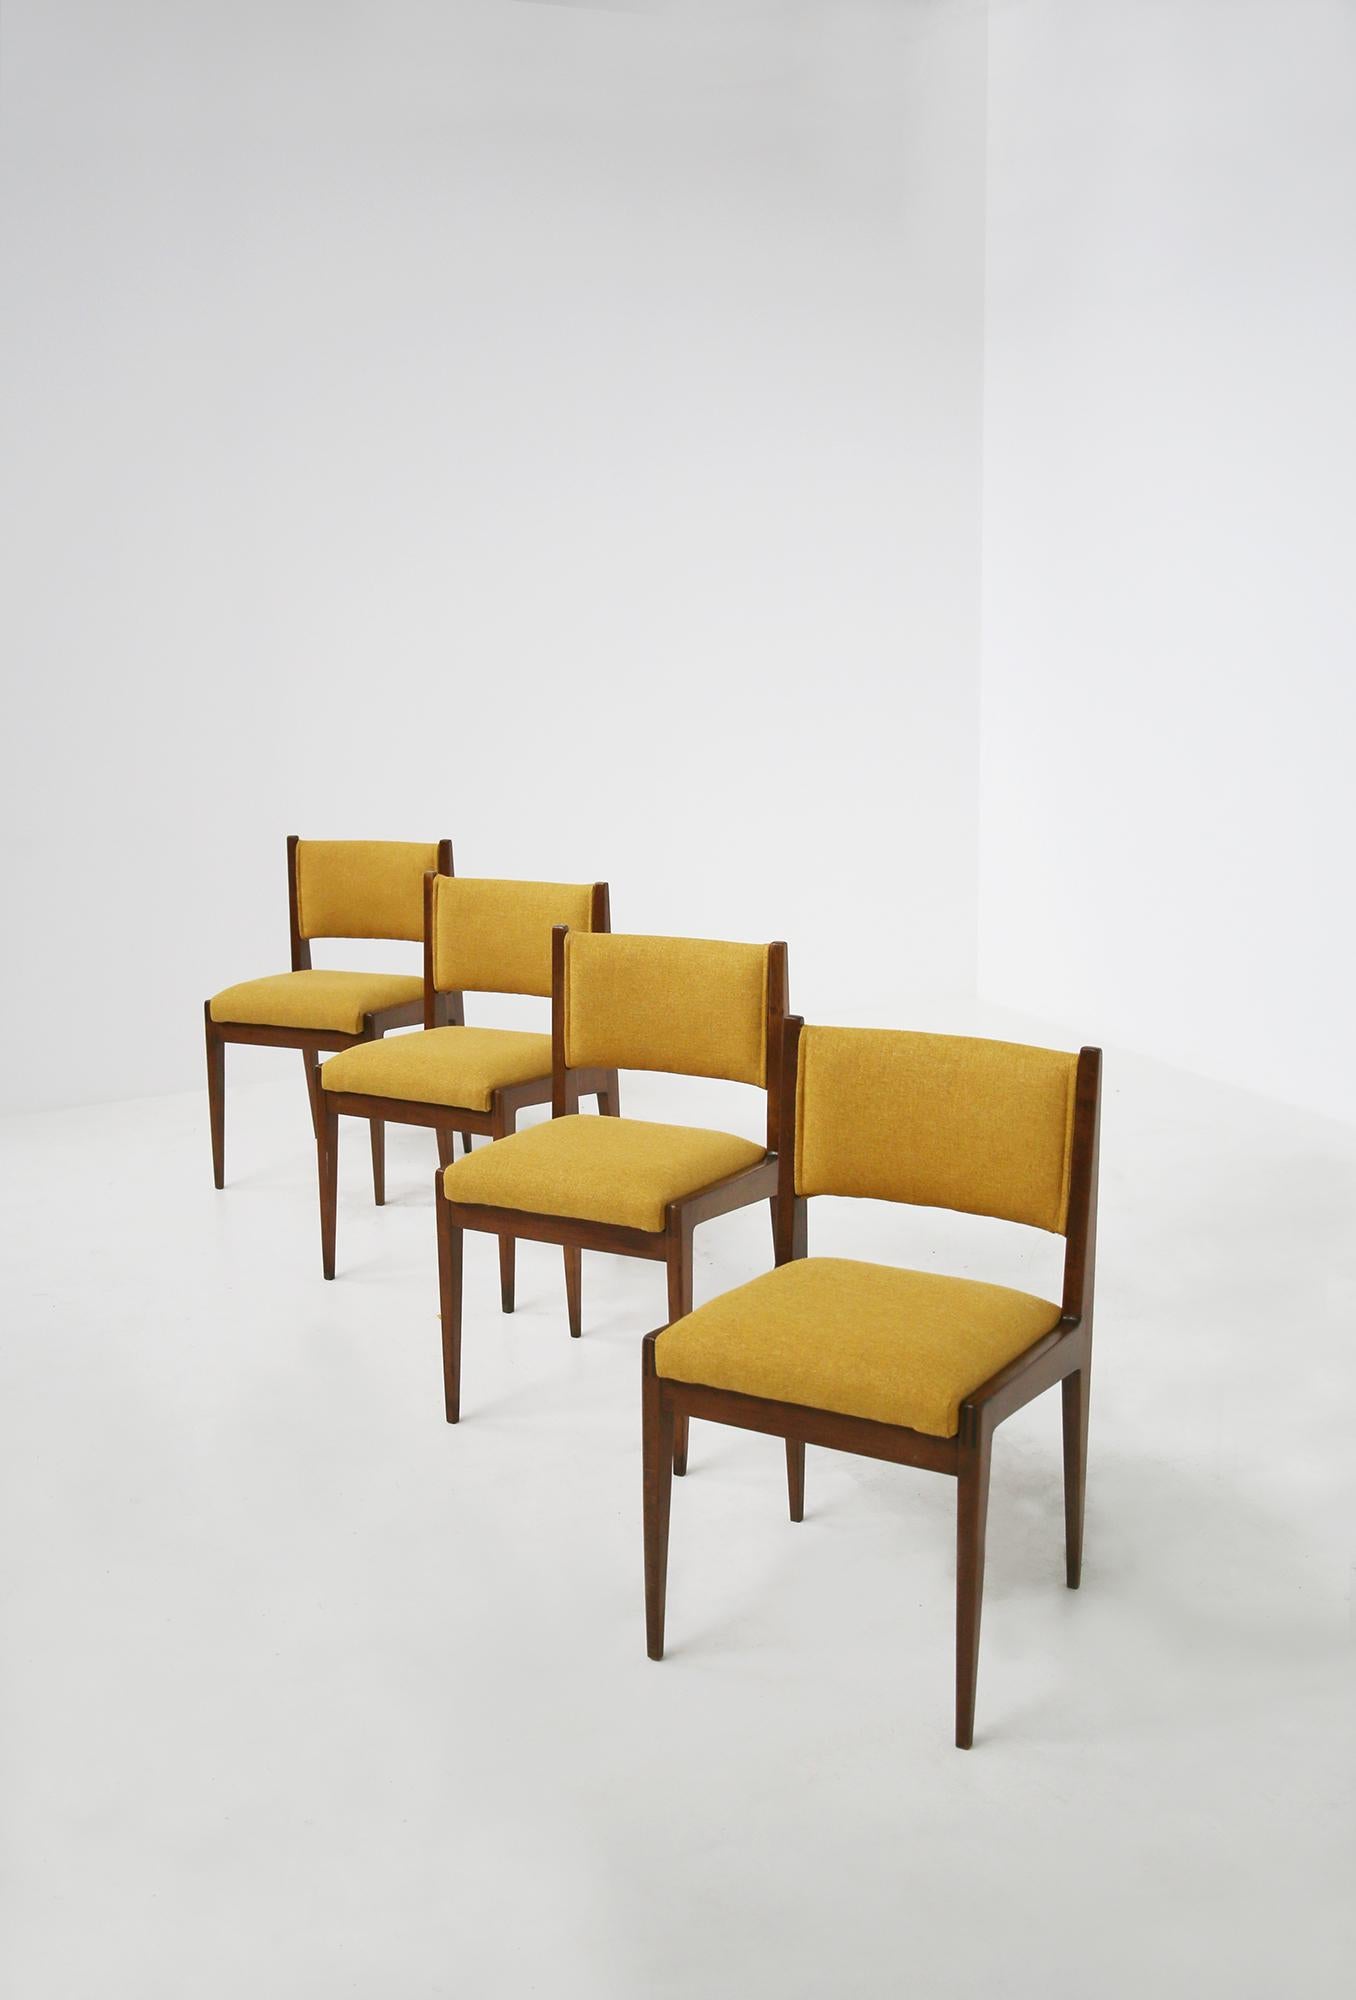 Set bestehend aus vier eleganten italienischen Stühlen, entworfen von Gianfranco Frattini für Bottega Ghianda. Die Stühle sind von 1970. Das Set ist aus Walnussholz mit gelber italienischer Baumwollpolsterung gefertigt. Die Besonderheit der Stühle